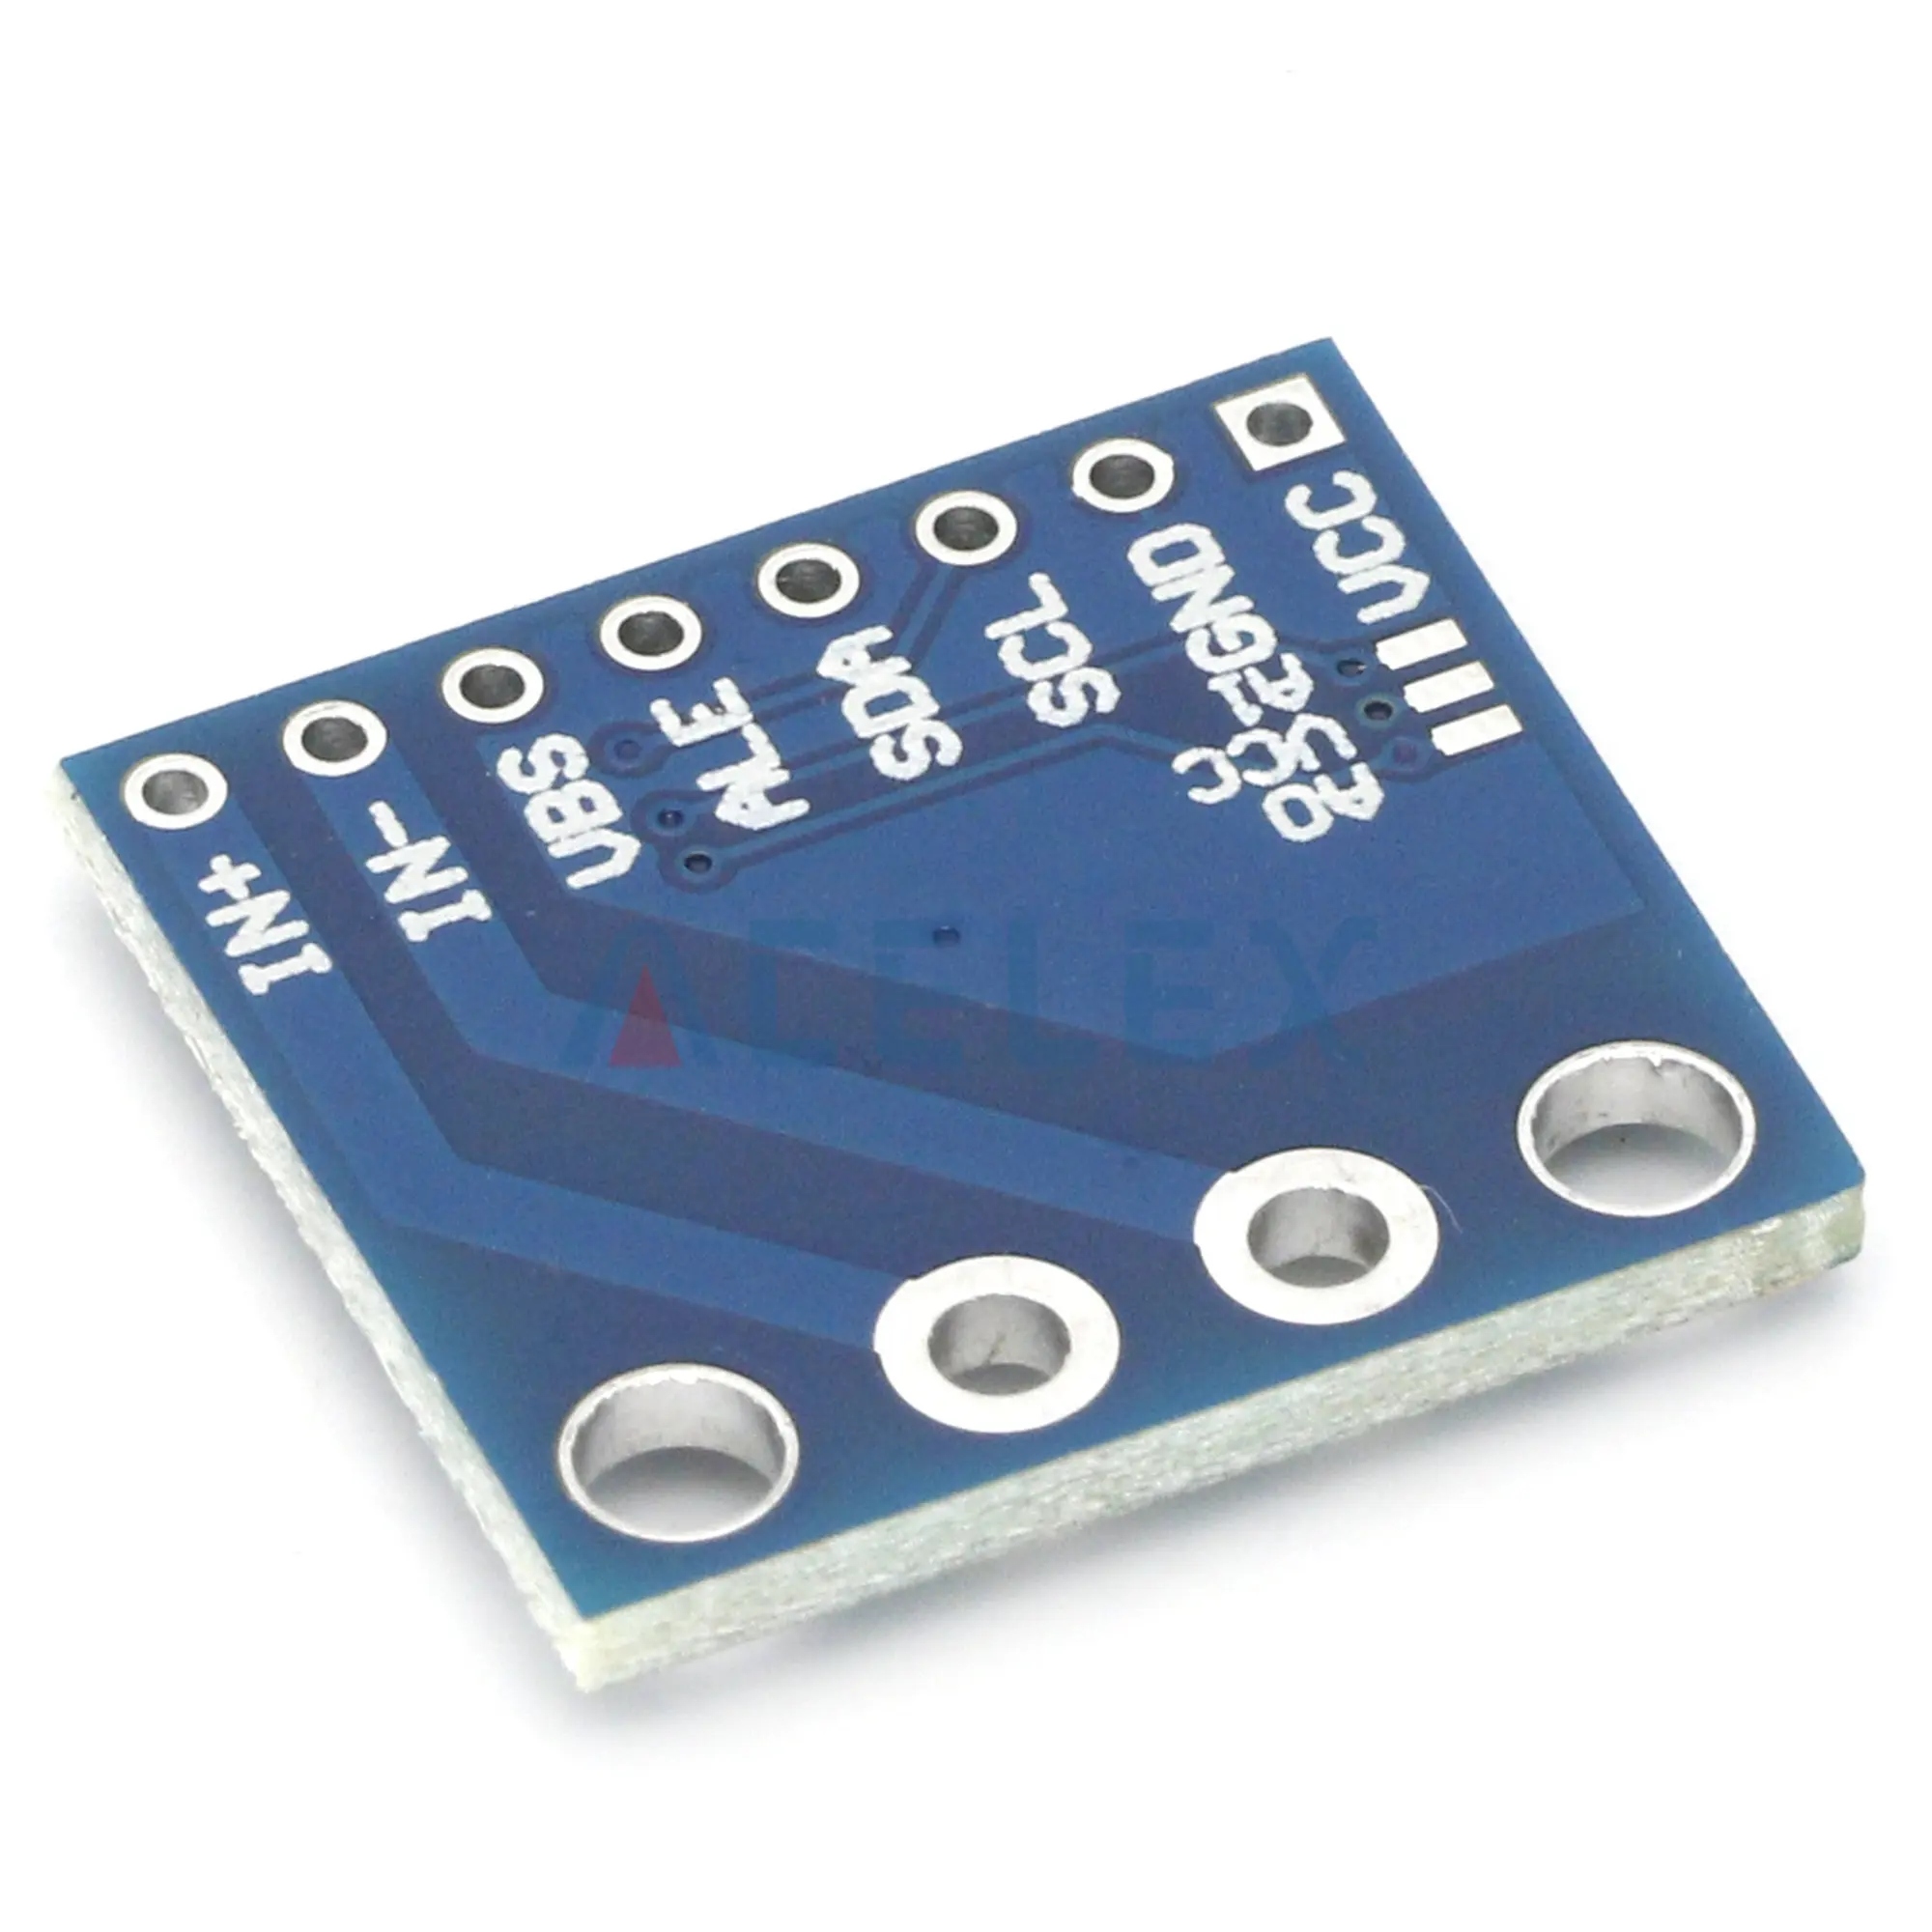 Модул сензор за двупосочен контрол на ток/мощност с интерфейс IIC INA226 226 0,01 0,1 Ω Ω5